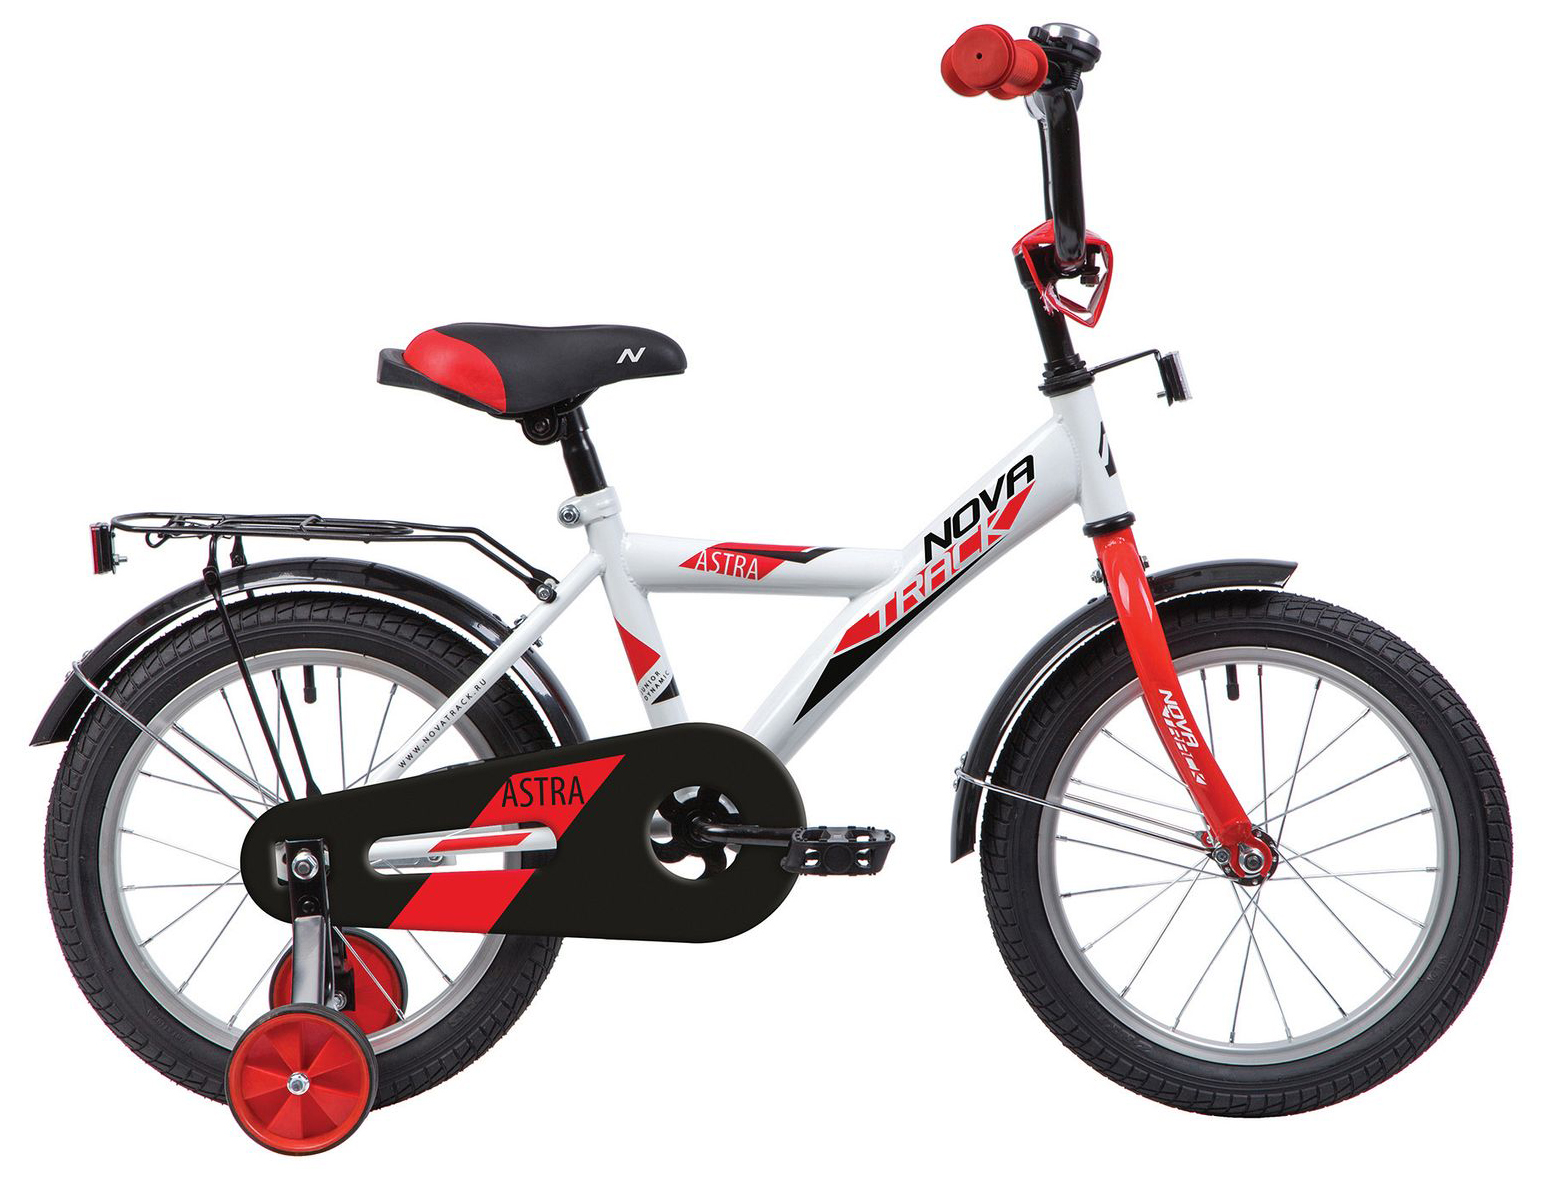  Отзывы о Детском велосипеде Novatrack Astra 16 2020